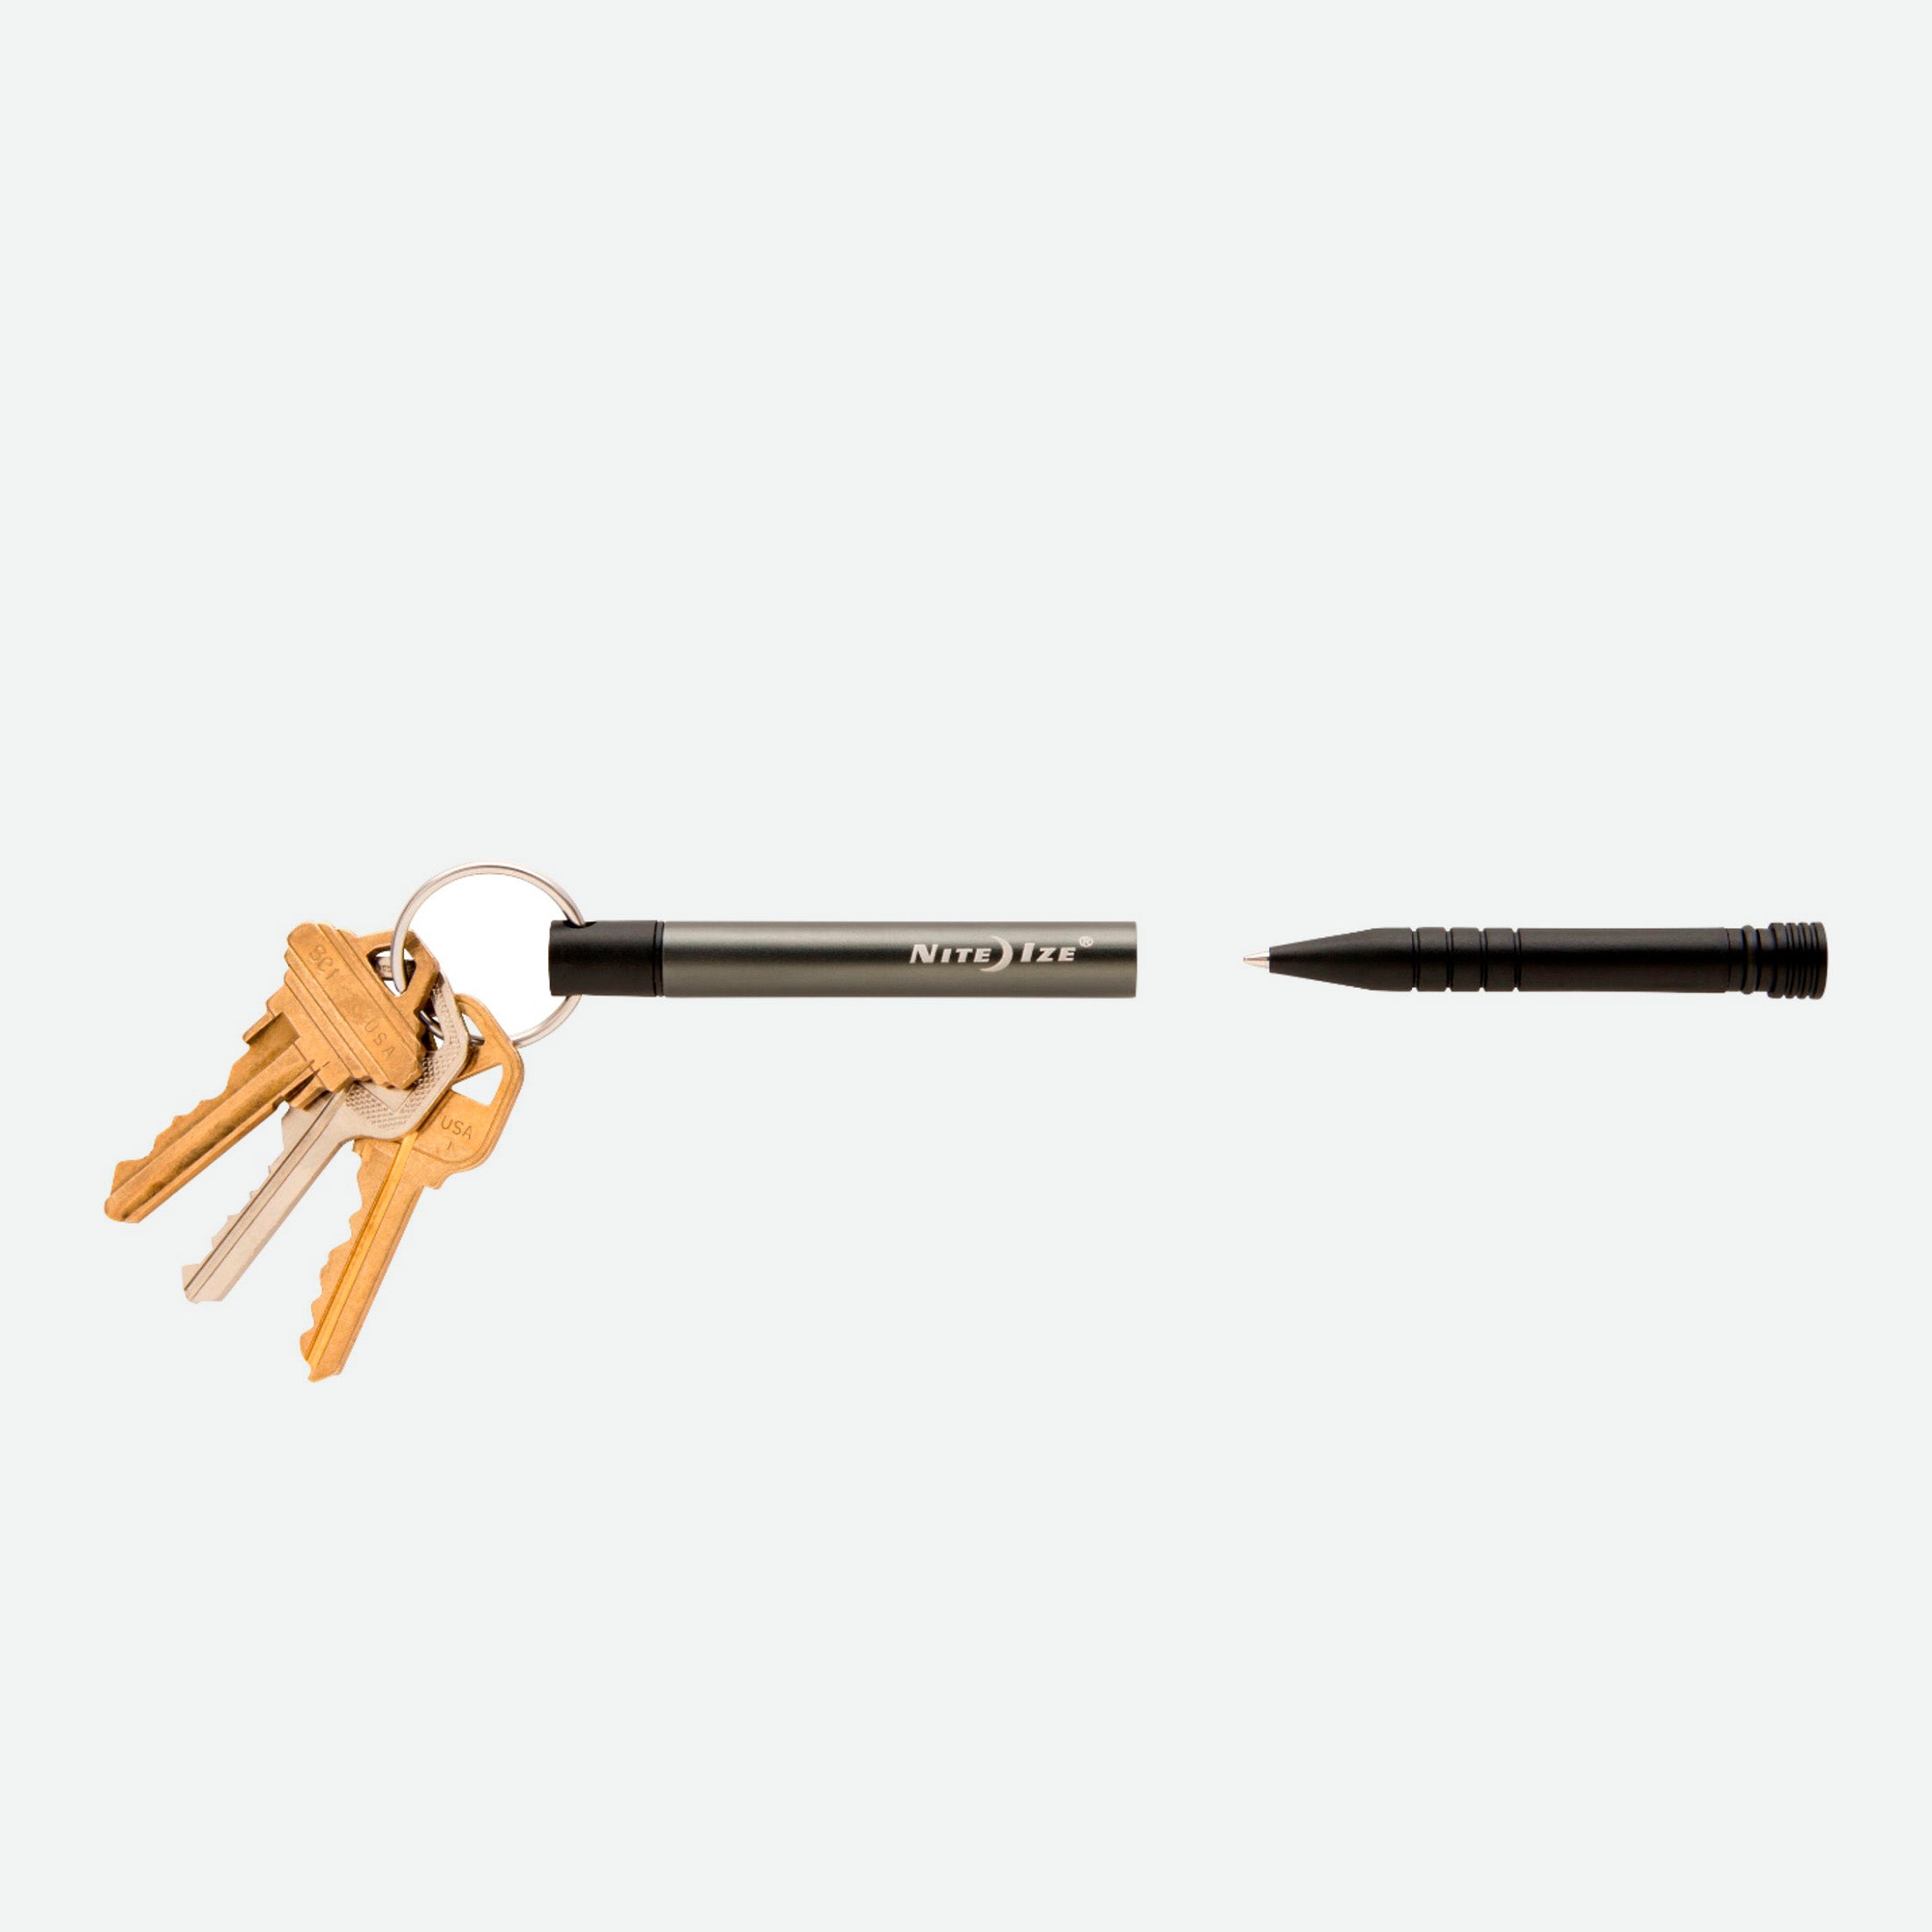 Nite Ize Inka® Key Chain Pen Charcoal